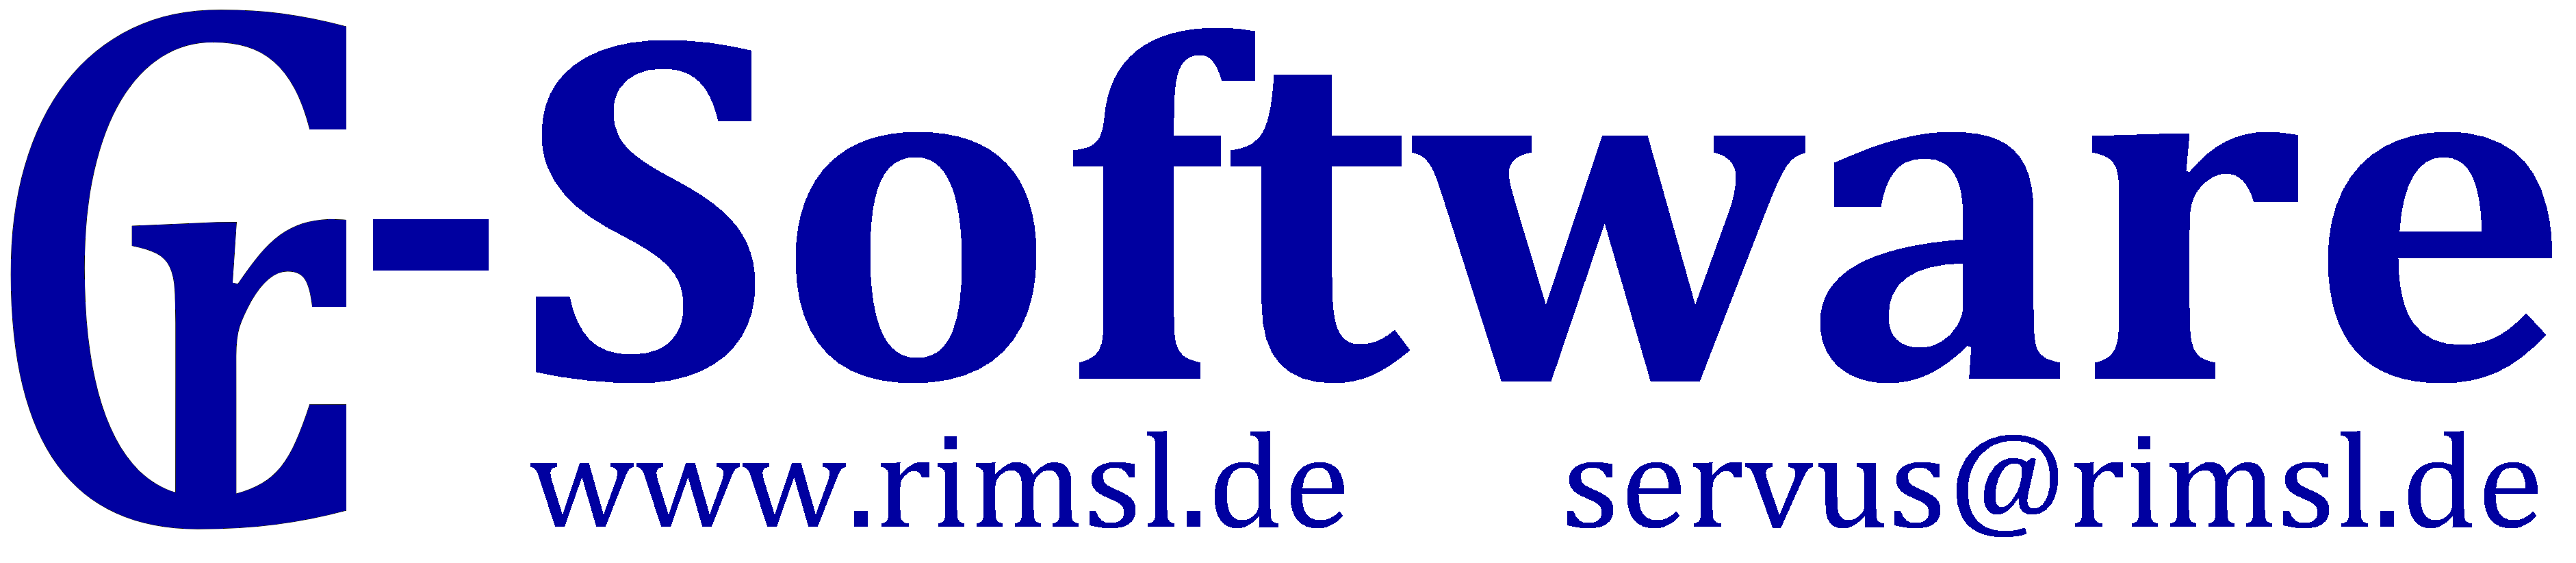 www.Rimsl.de